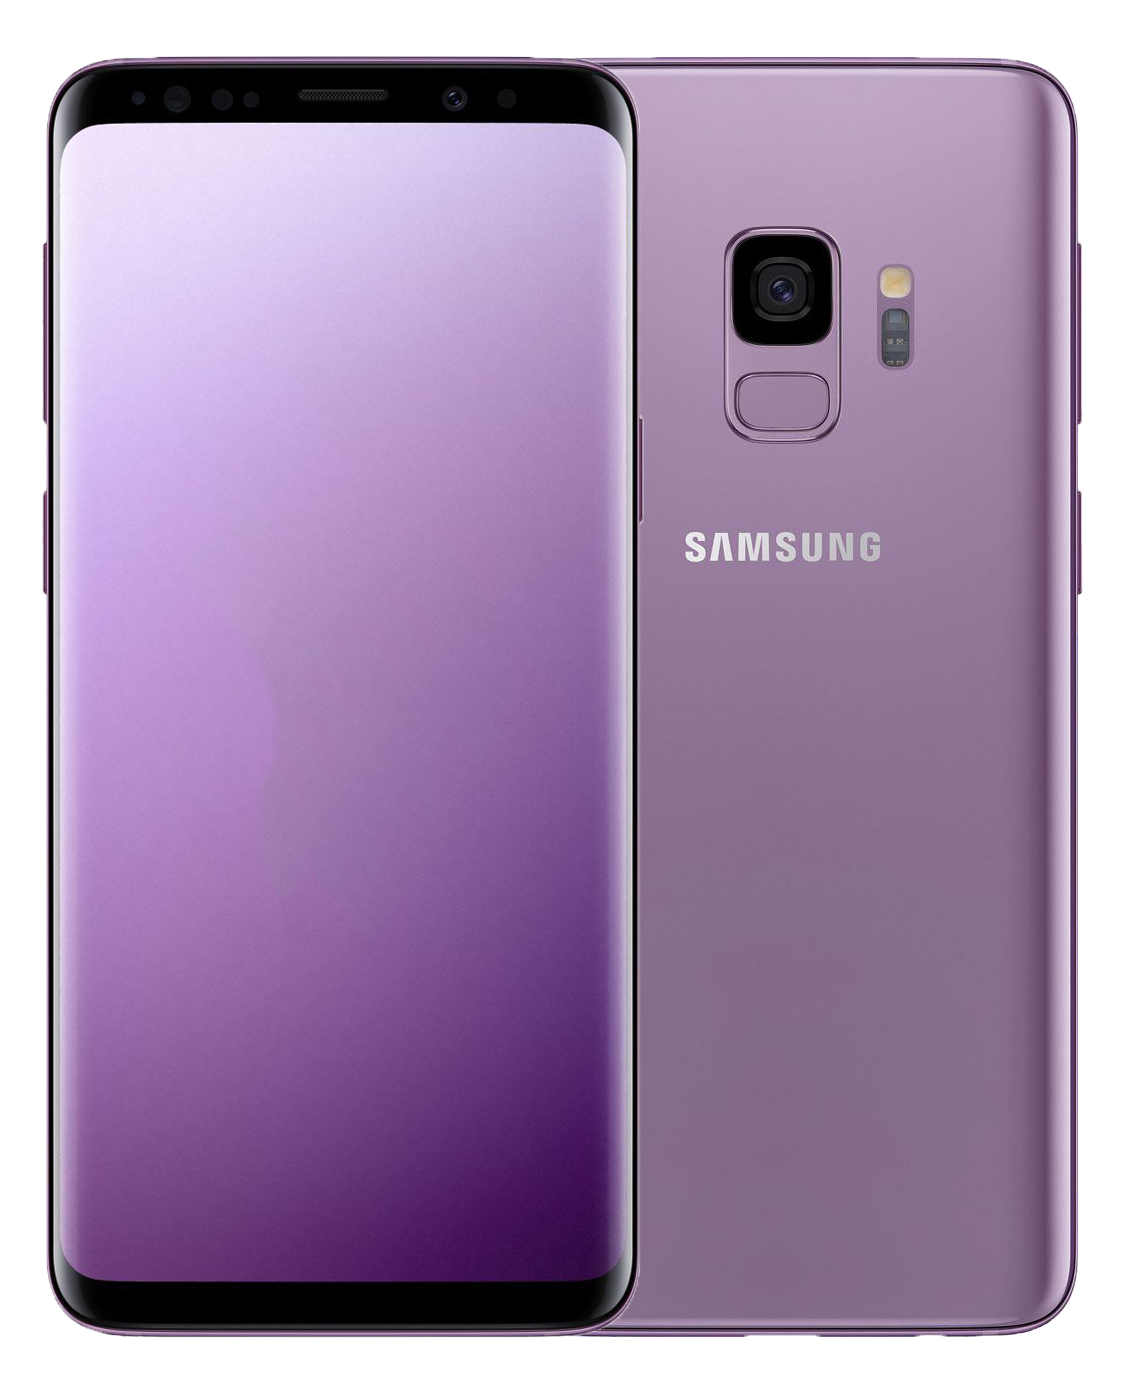 Samsung Galaxy S9 Dual-SIM lila - Ohne Vertrag